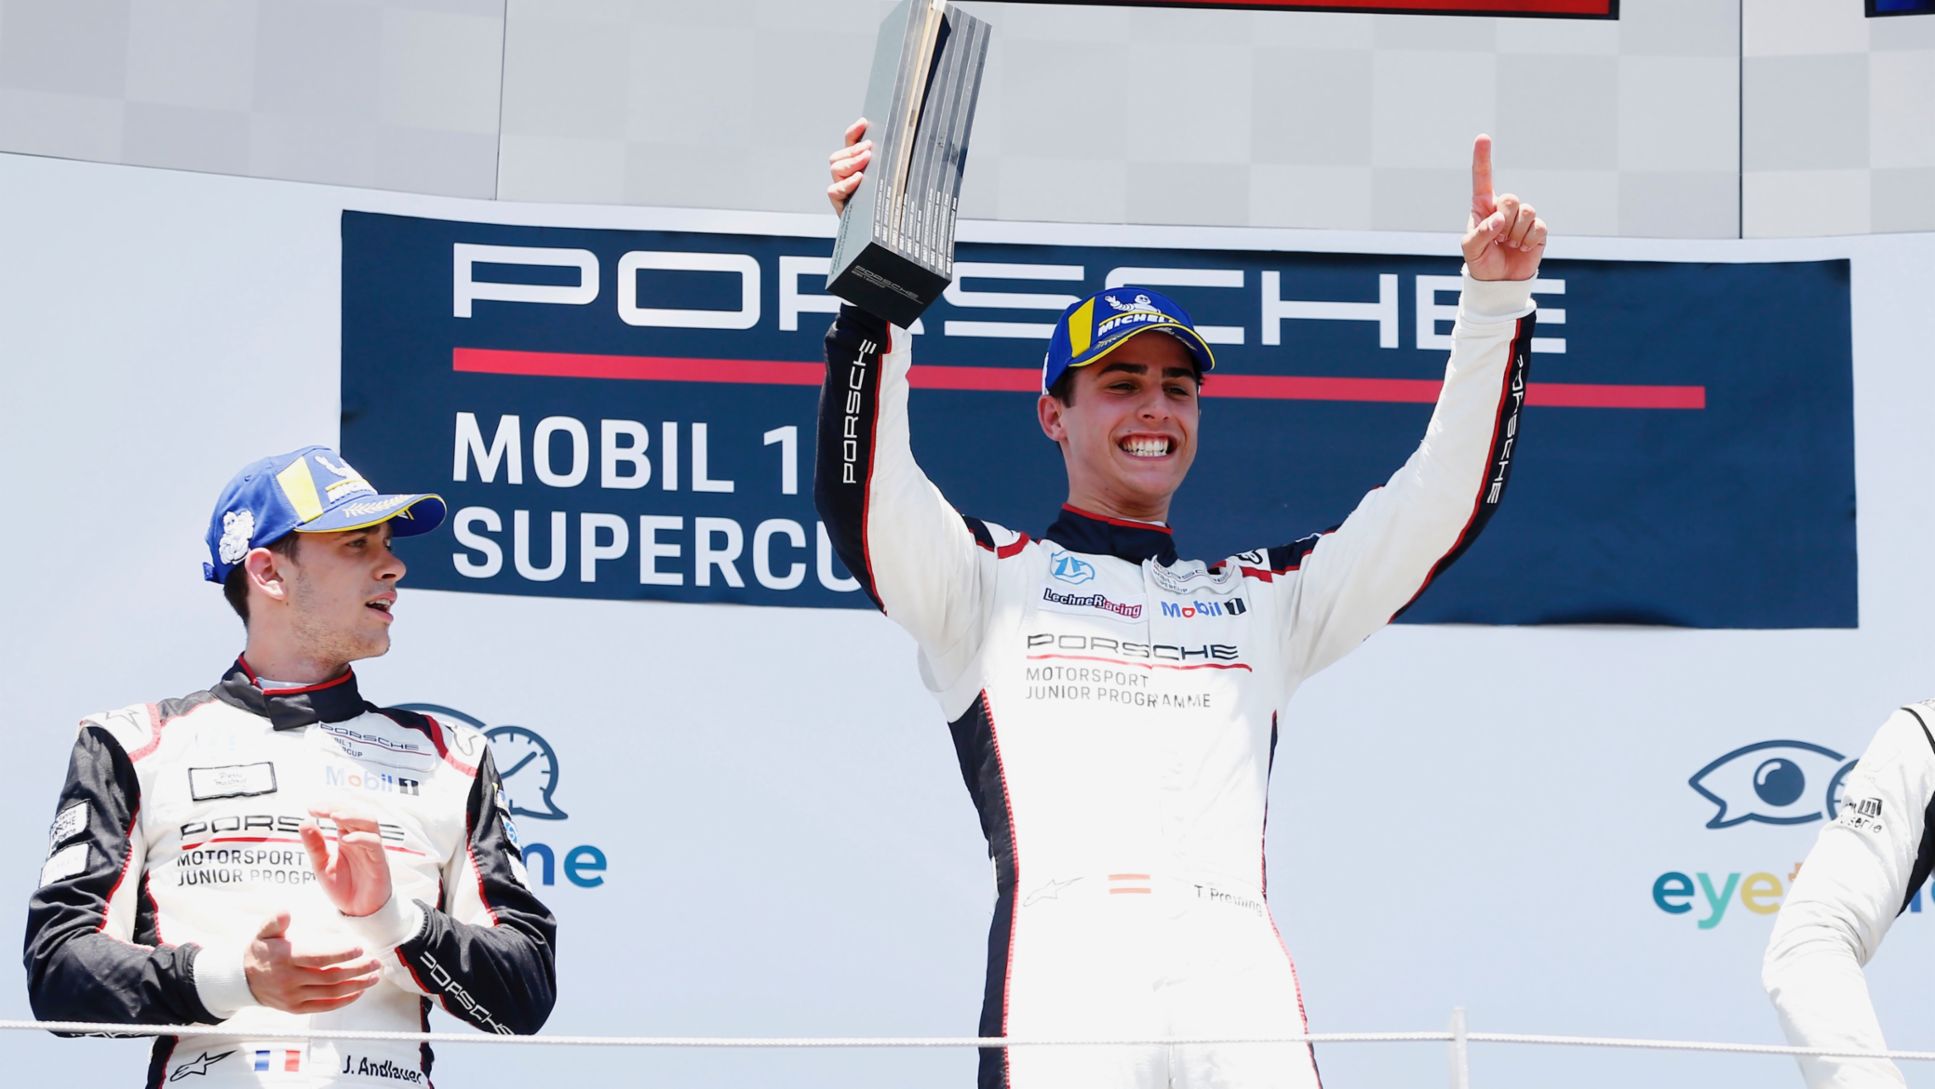 Porsche Mobil1 Supercup, Spielberg, race, 2018, Porsche AG